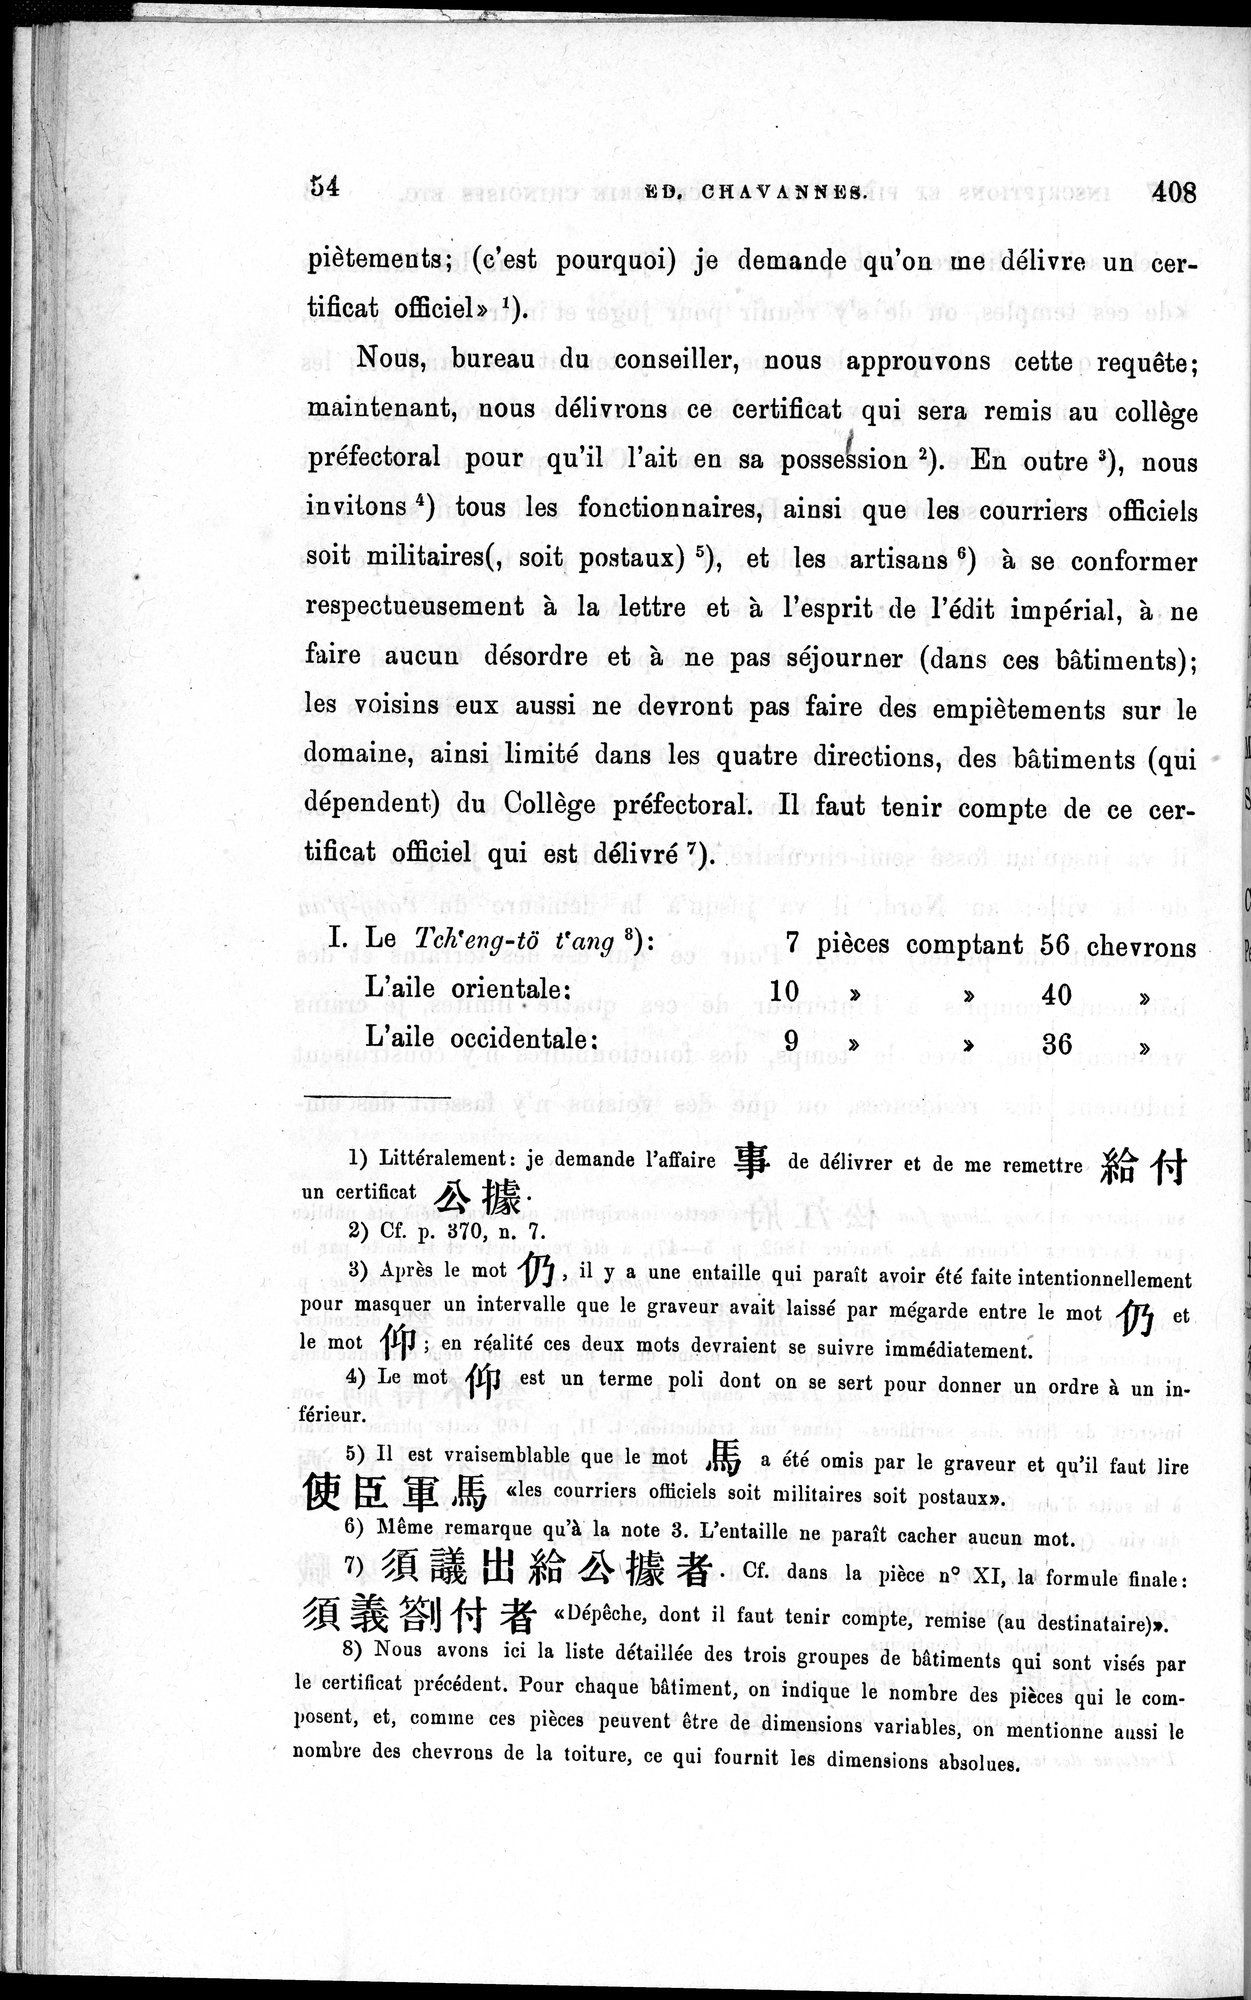 Inscriptions et pièces de Chancellerie Chinoises de l'époque mongol : vol.1 / Page 64 (Grayscale High Resolution Image)